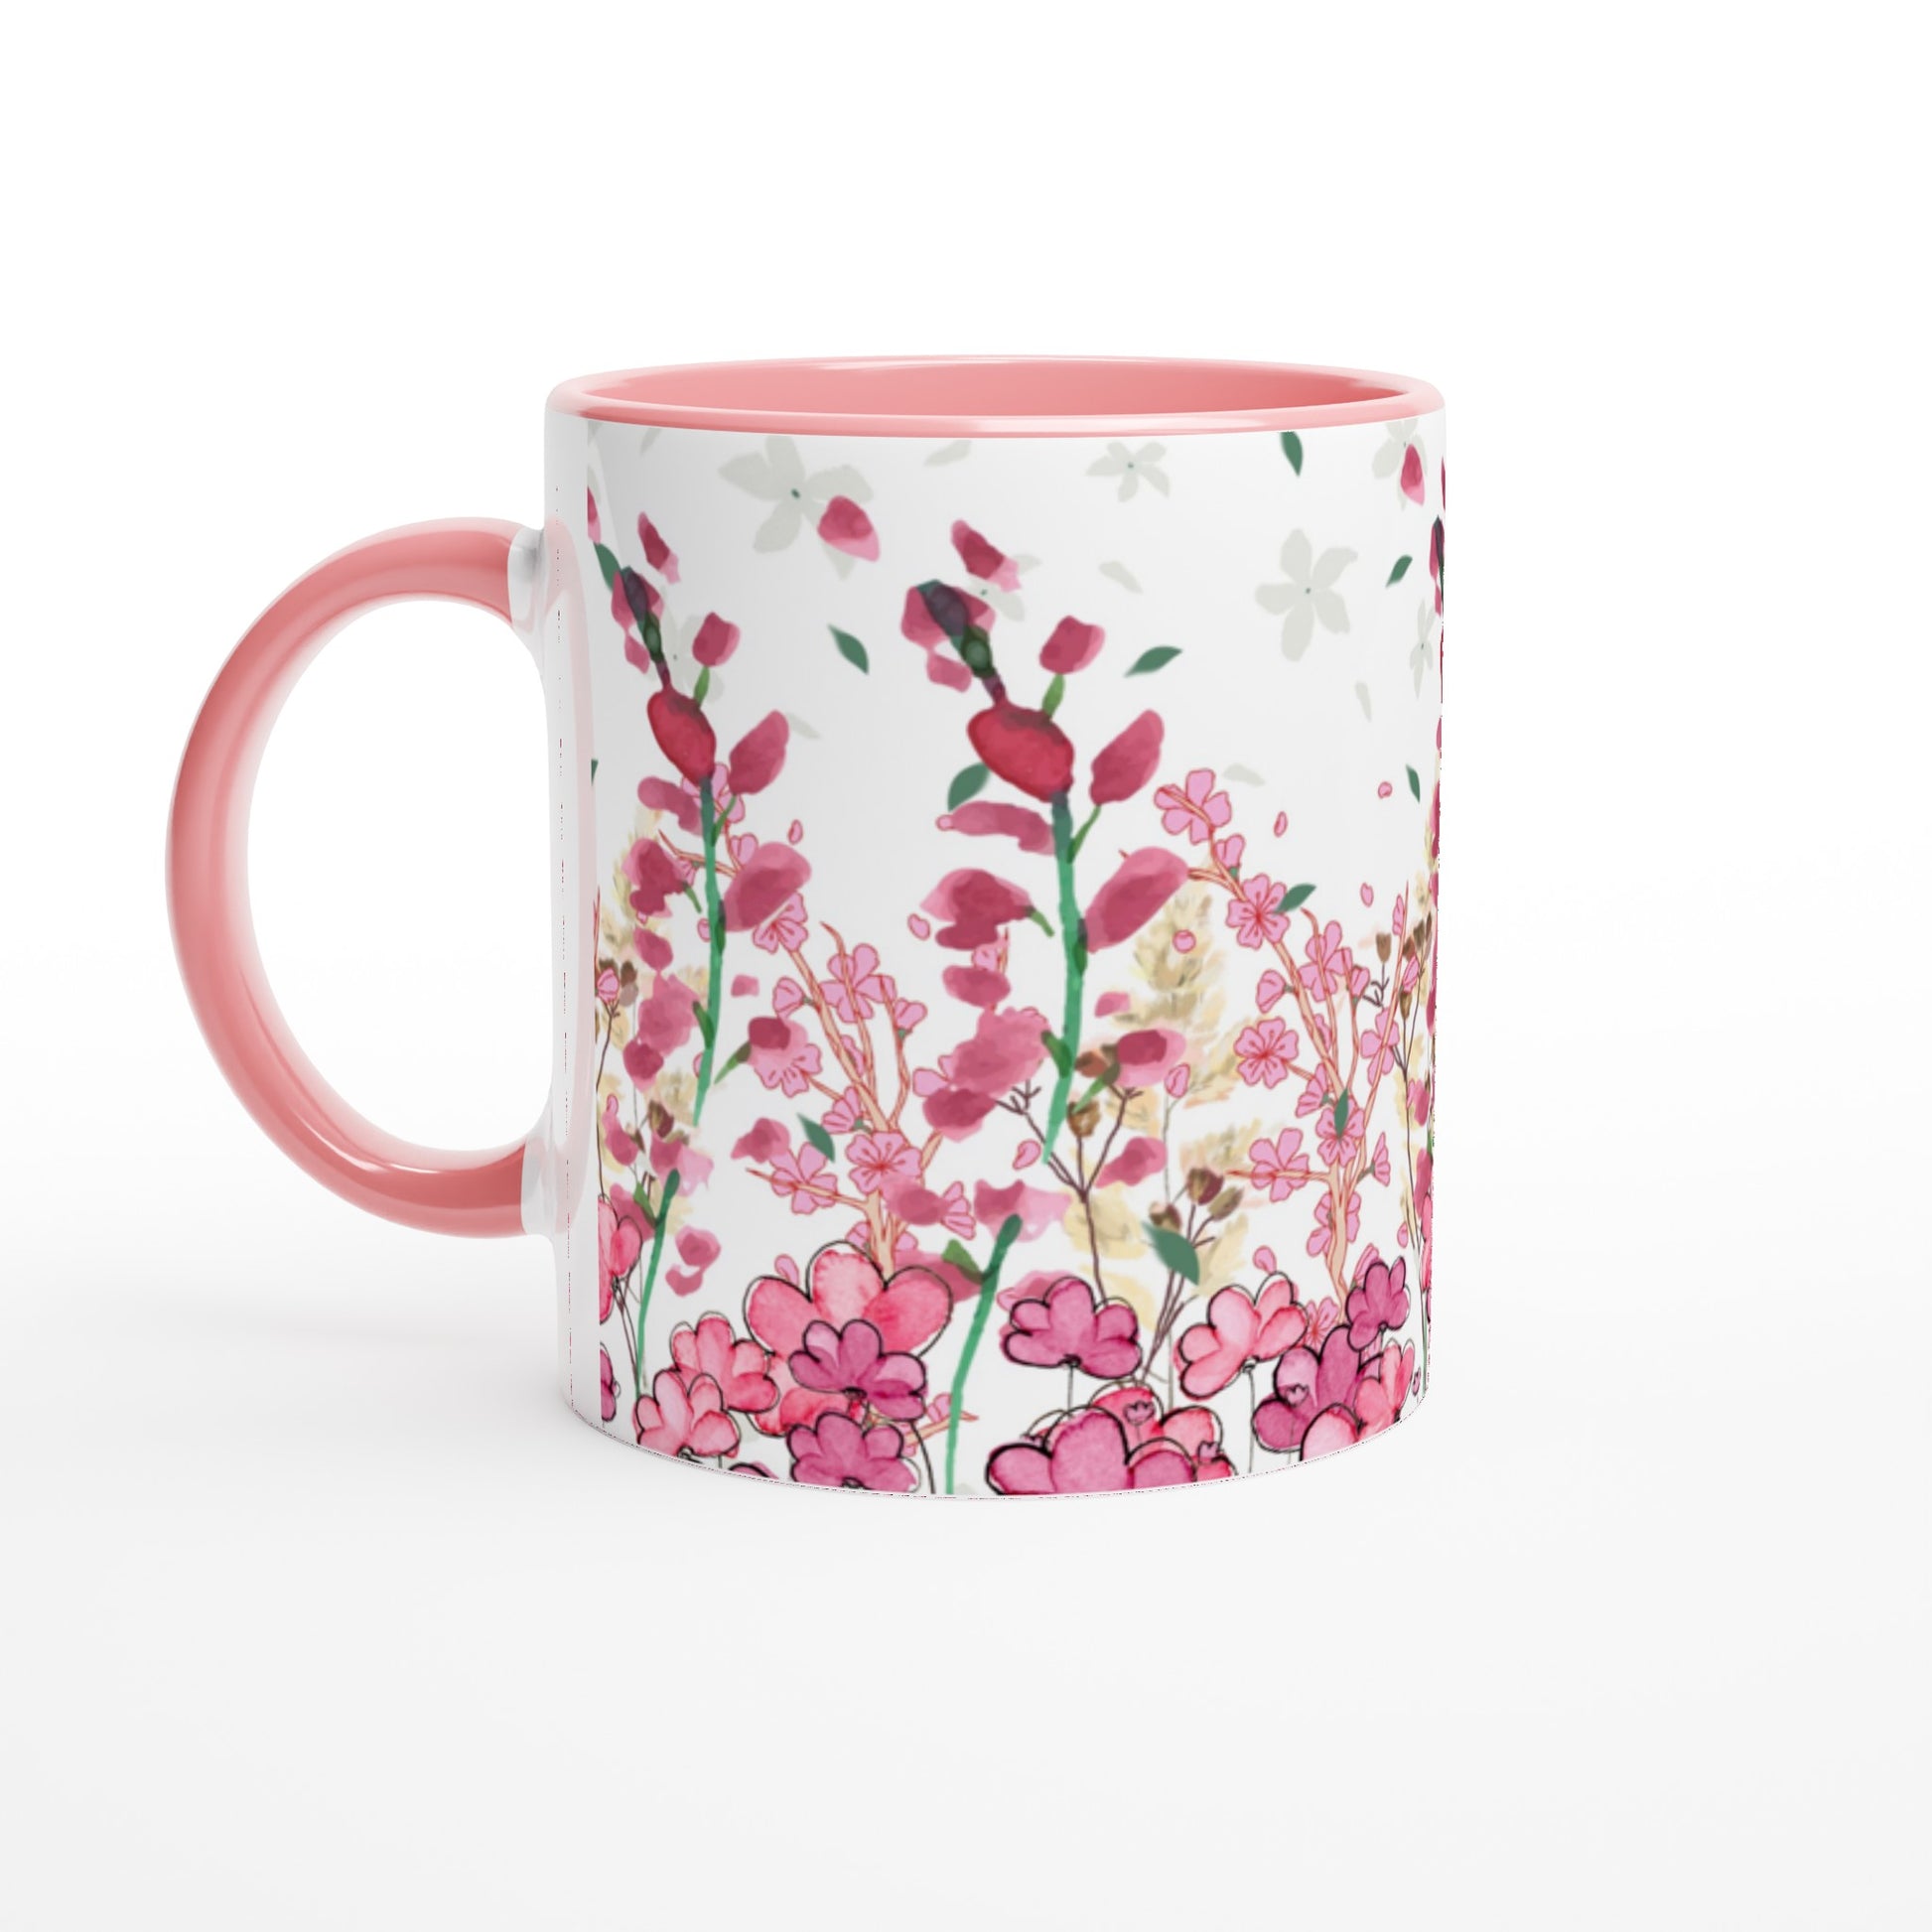 Hermosa taza floral en tonos rosas